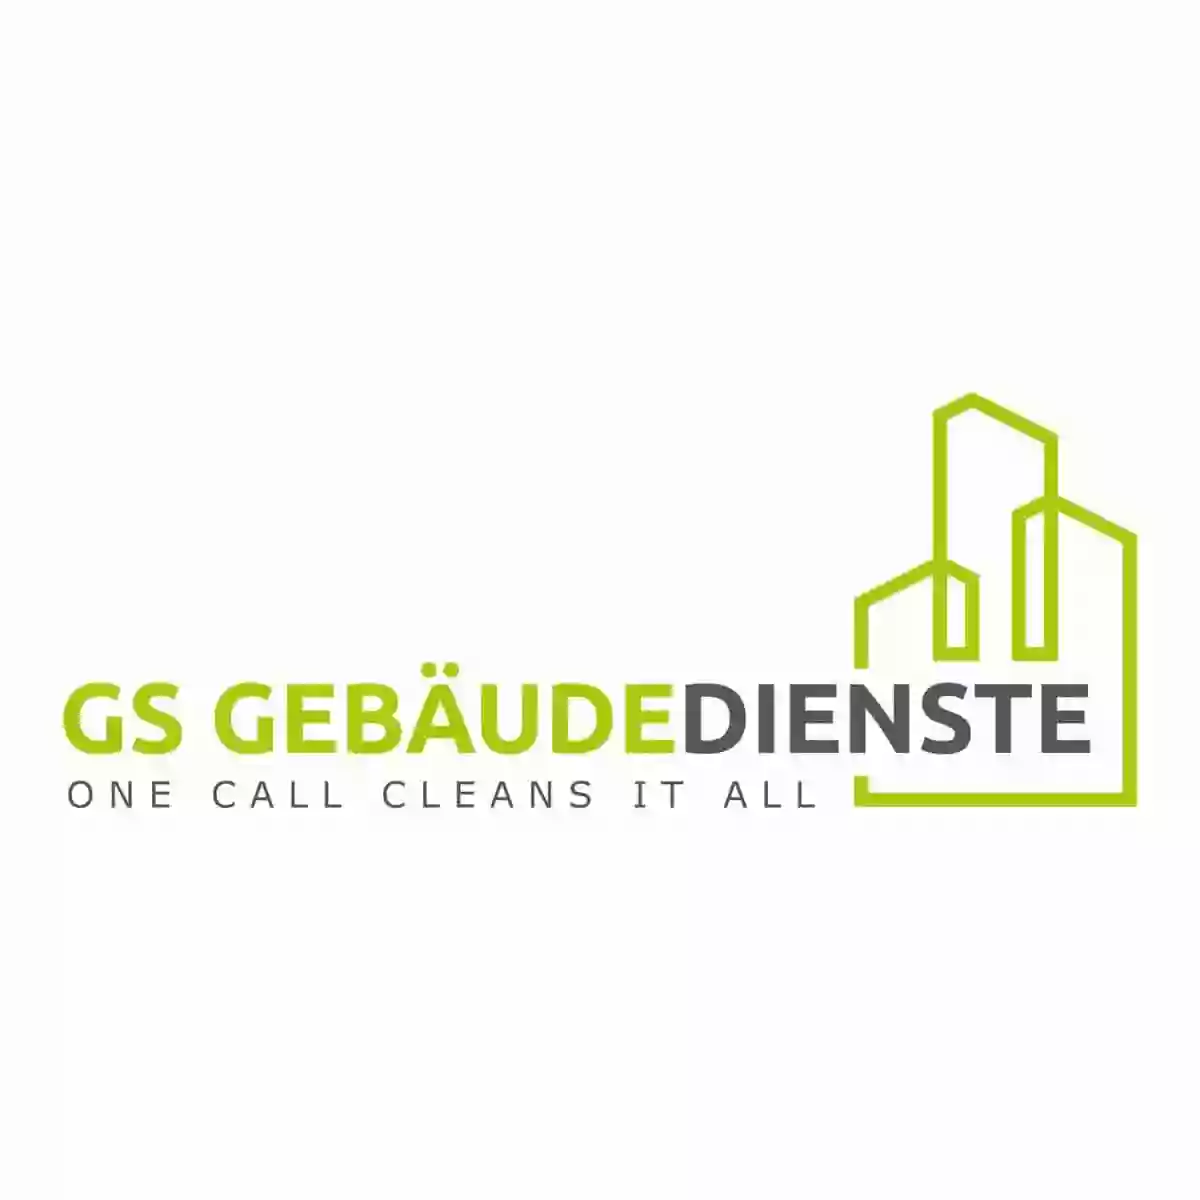 GS Gebäudedienste & Gebäudereinigung - Gerrit Säger